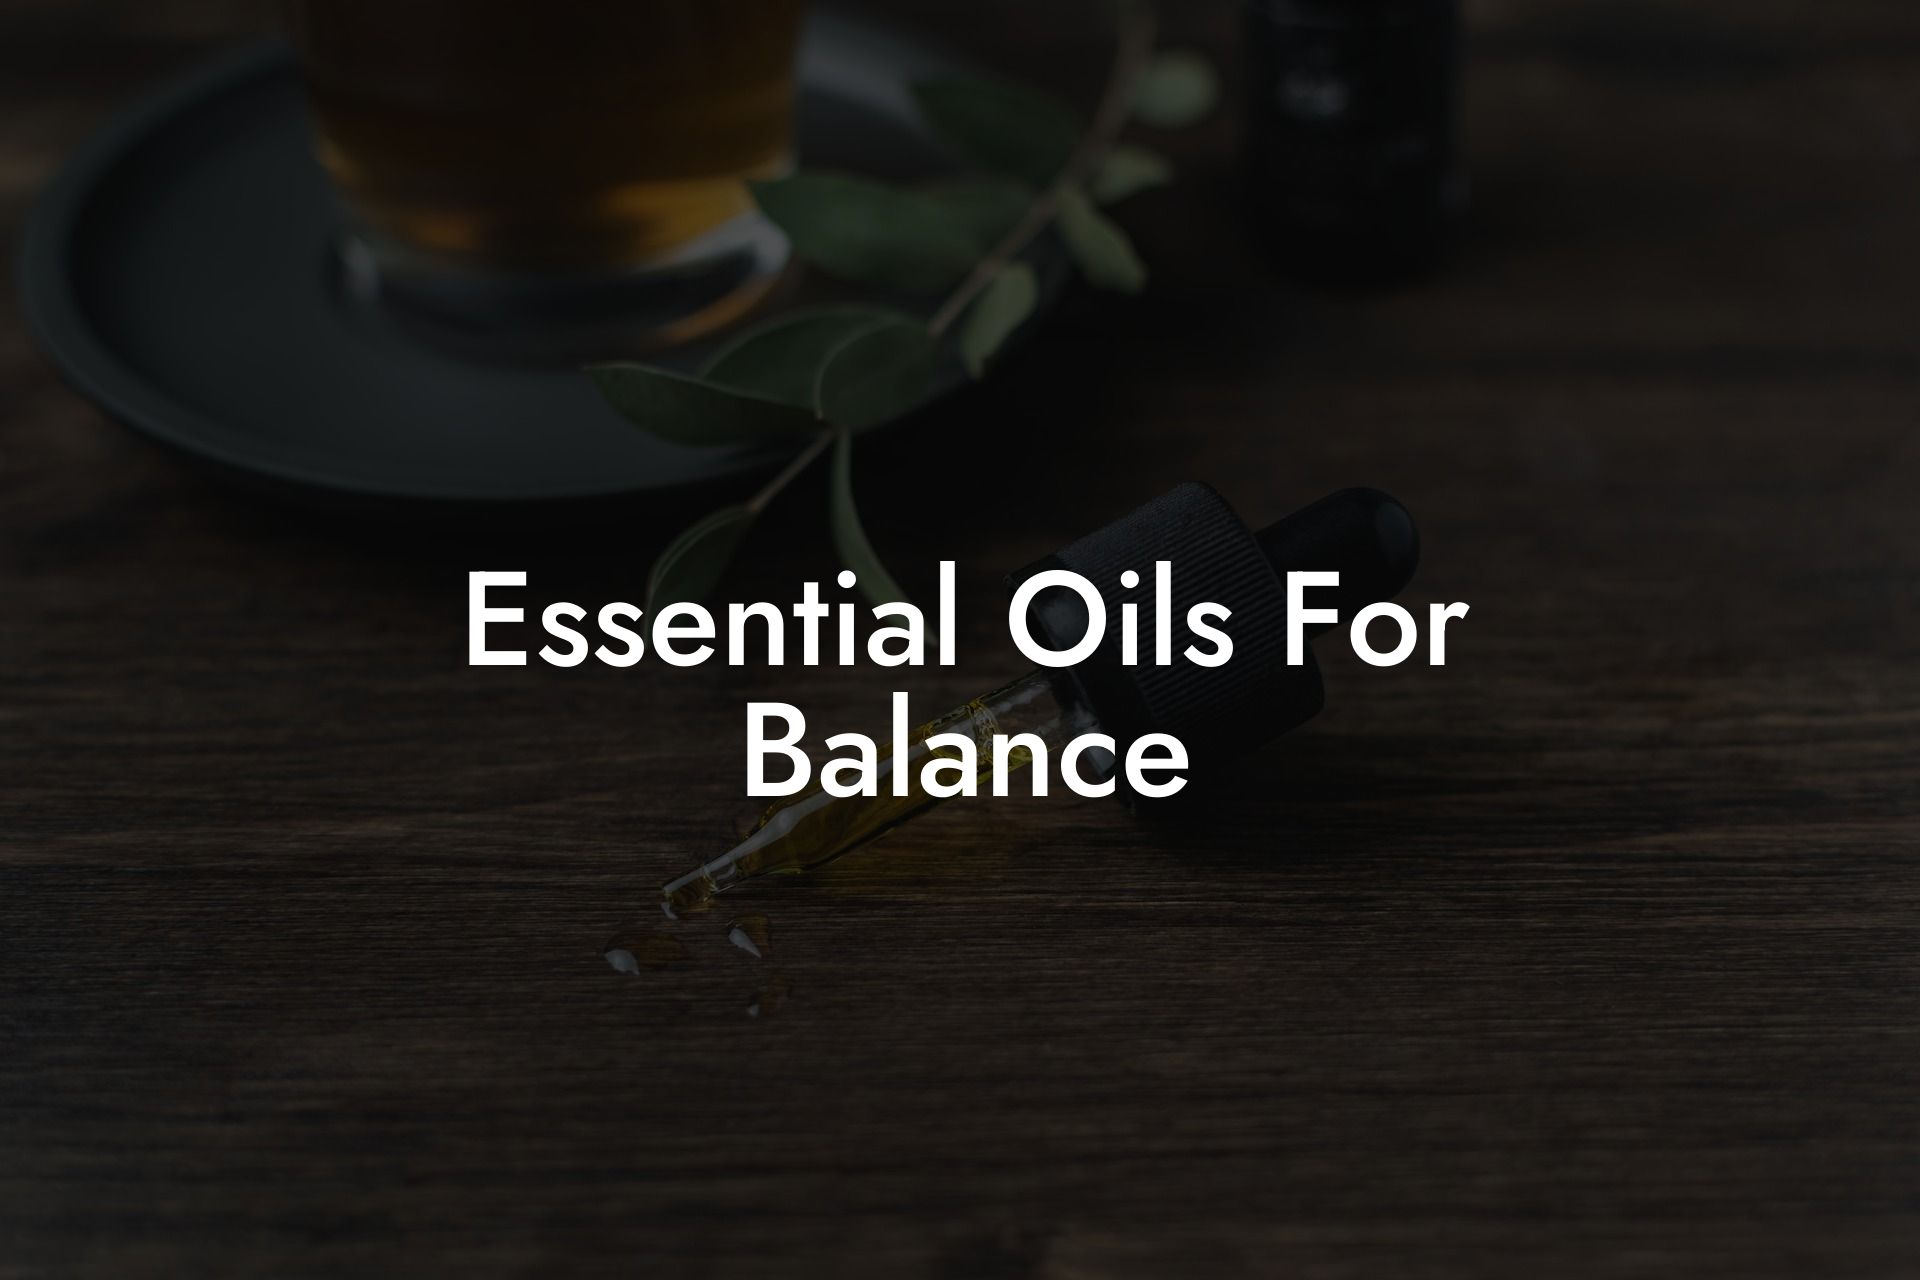 Essential Oils For Balance